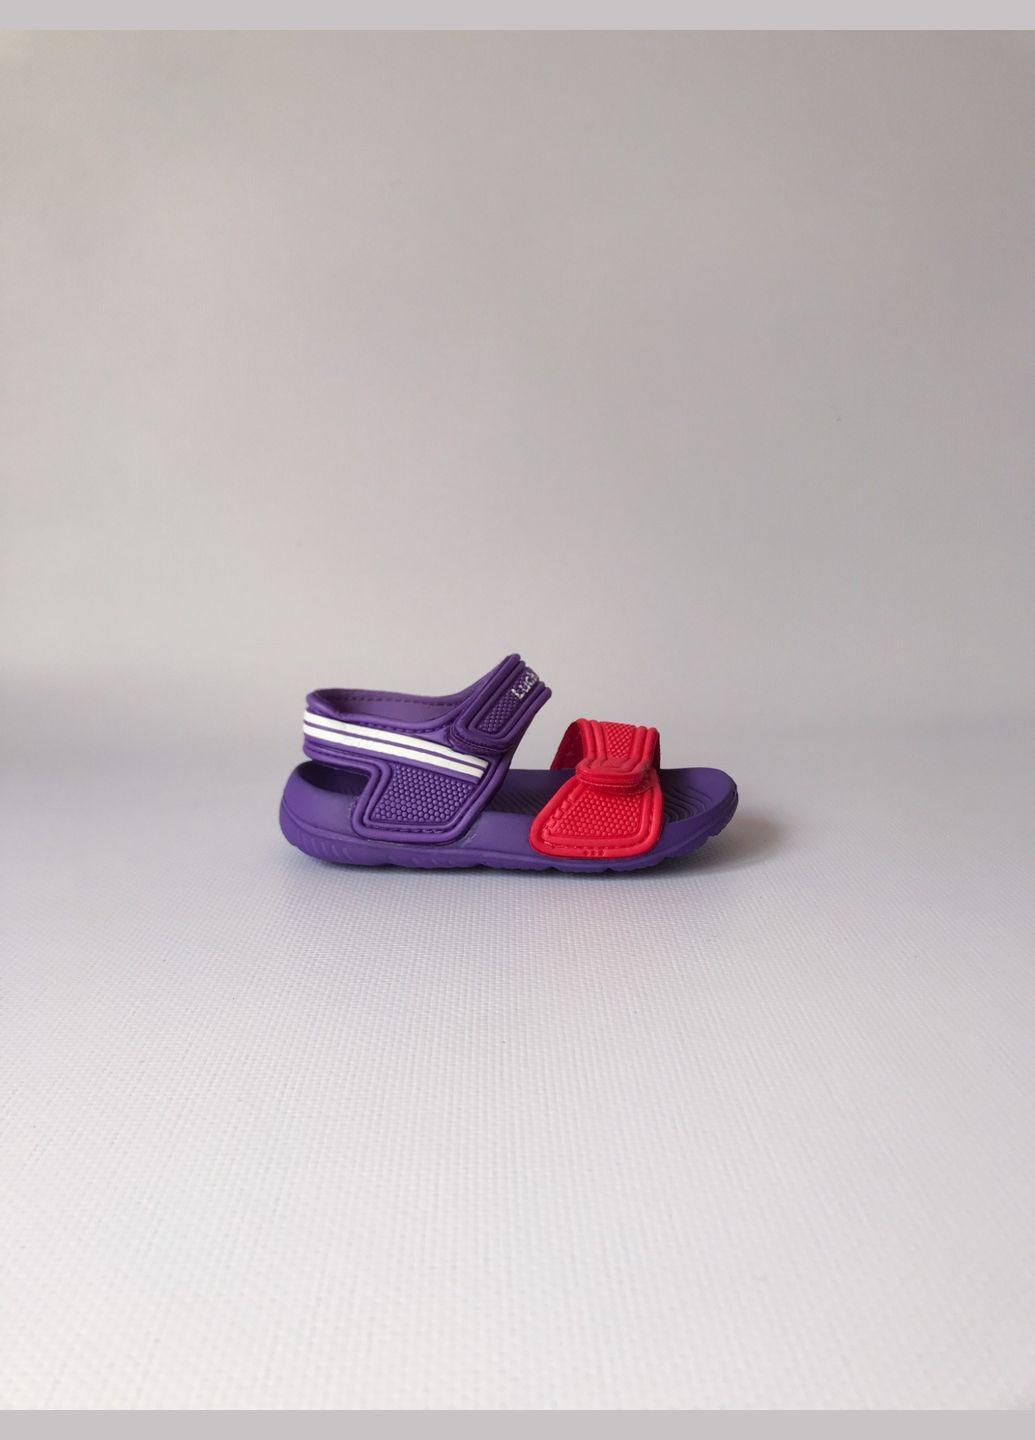 Фиолетовые детские сандалии 18 г 12 см фиолетовый артикул ш57 Luck Line